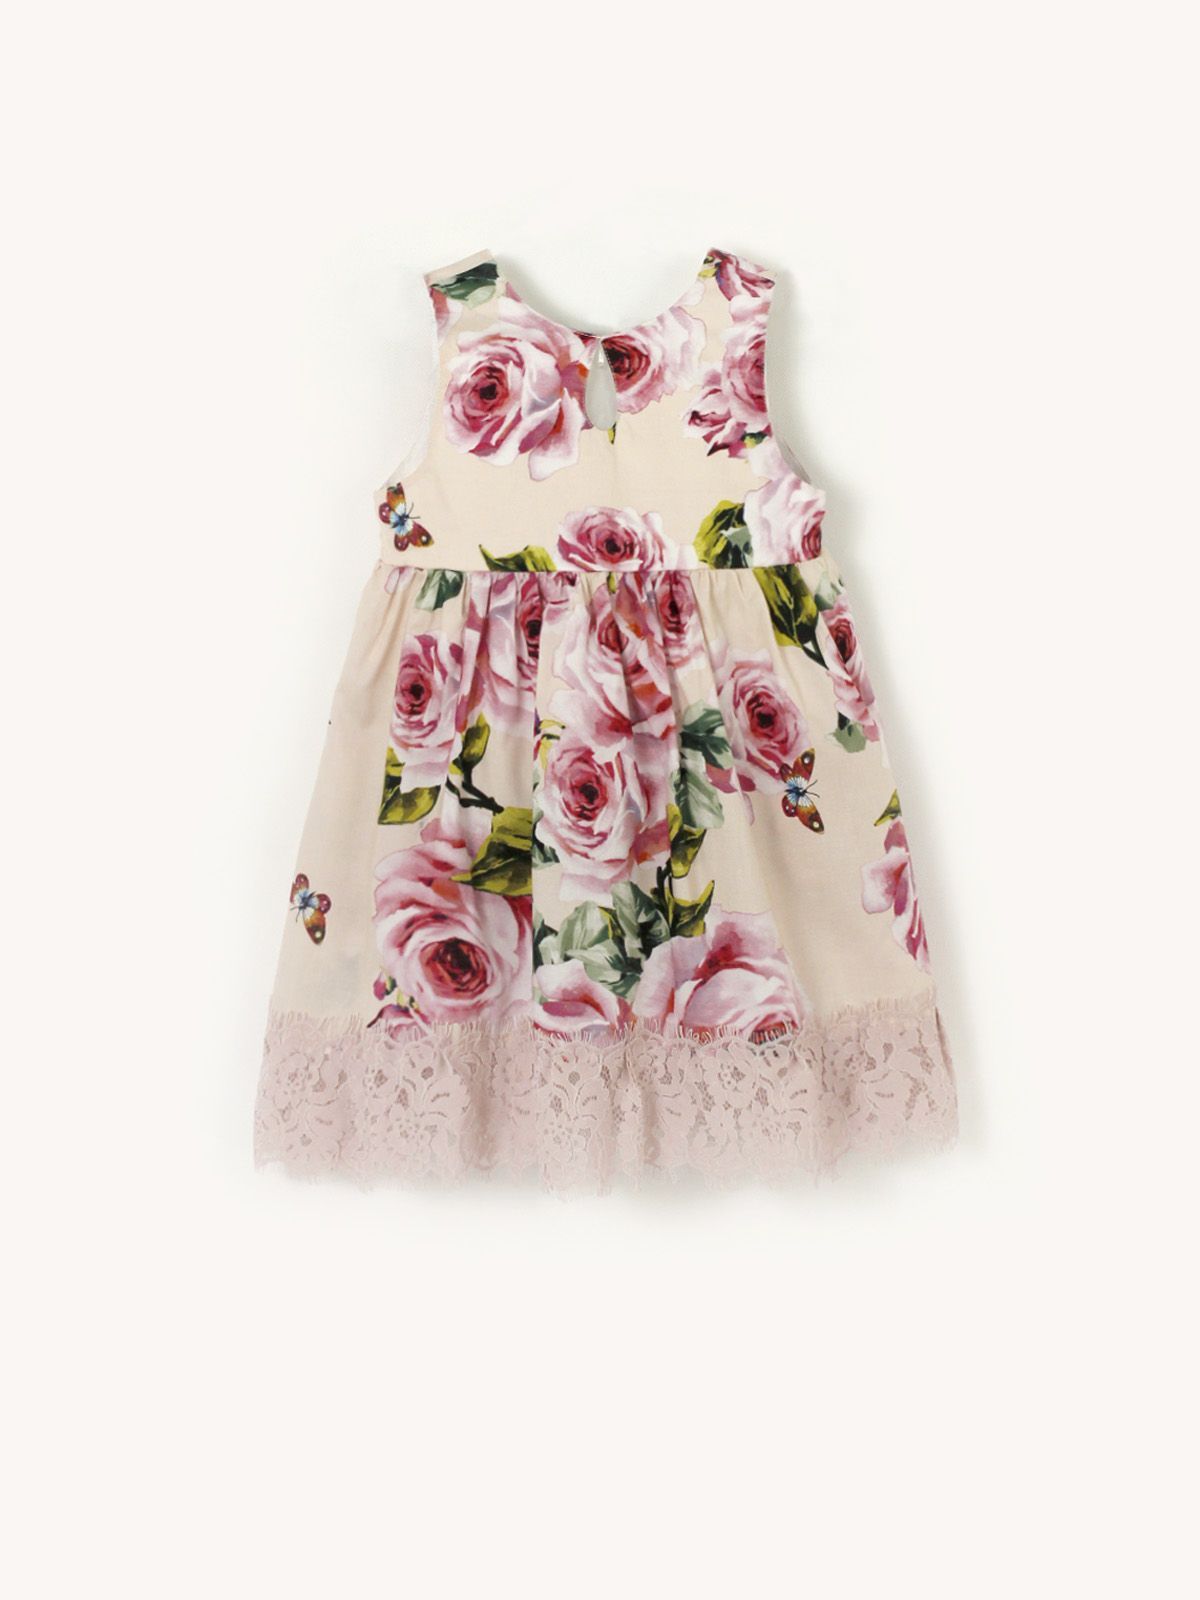 Платье детское Даримир Розовыйбукетбежевый80, розовый, 80